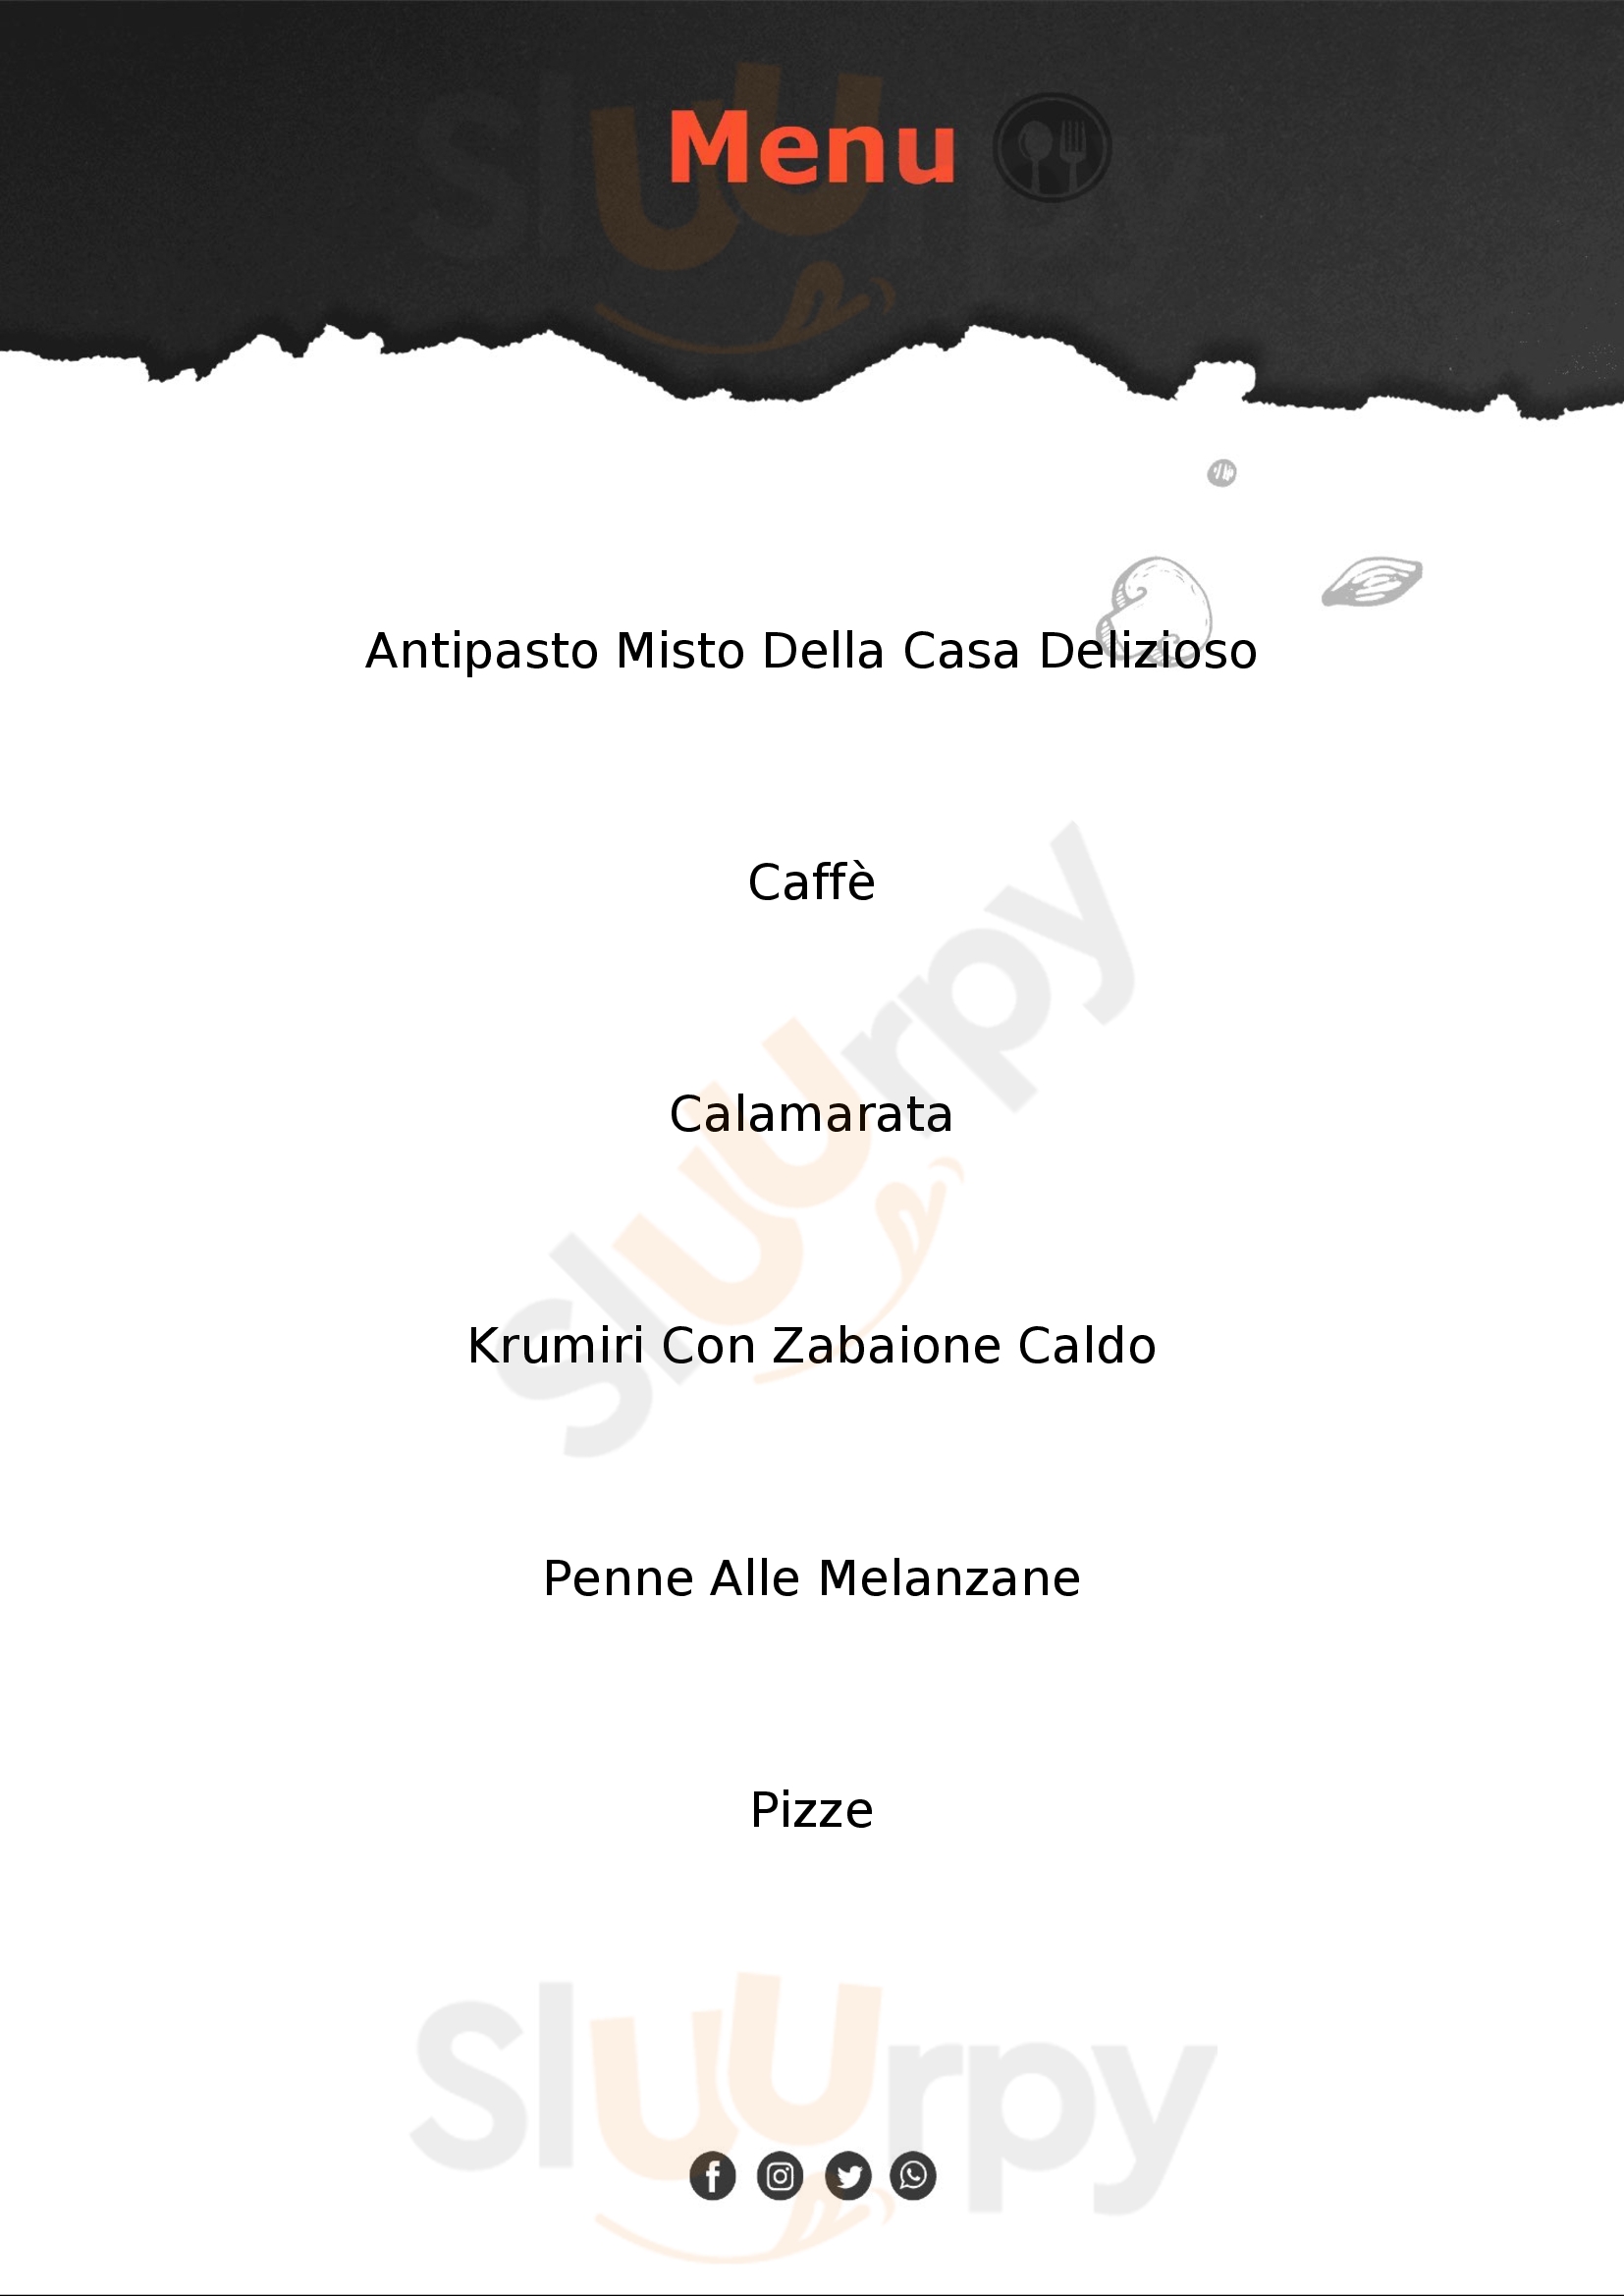 Capri Casale Monferrato menù 1 pagina